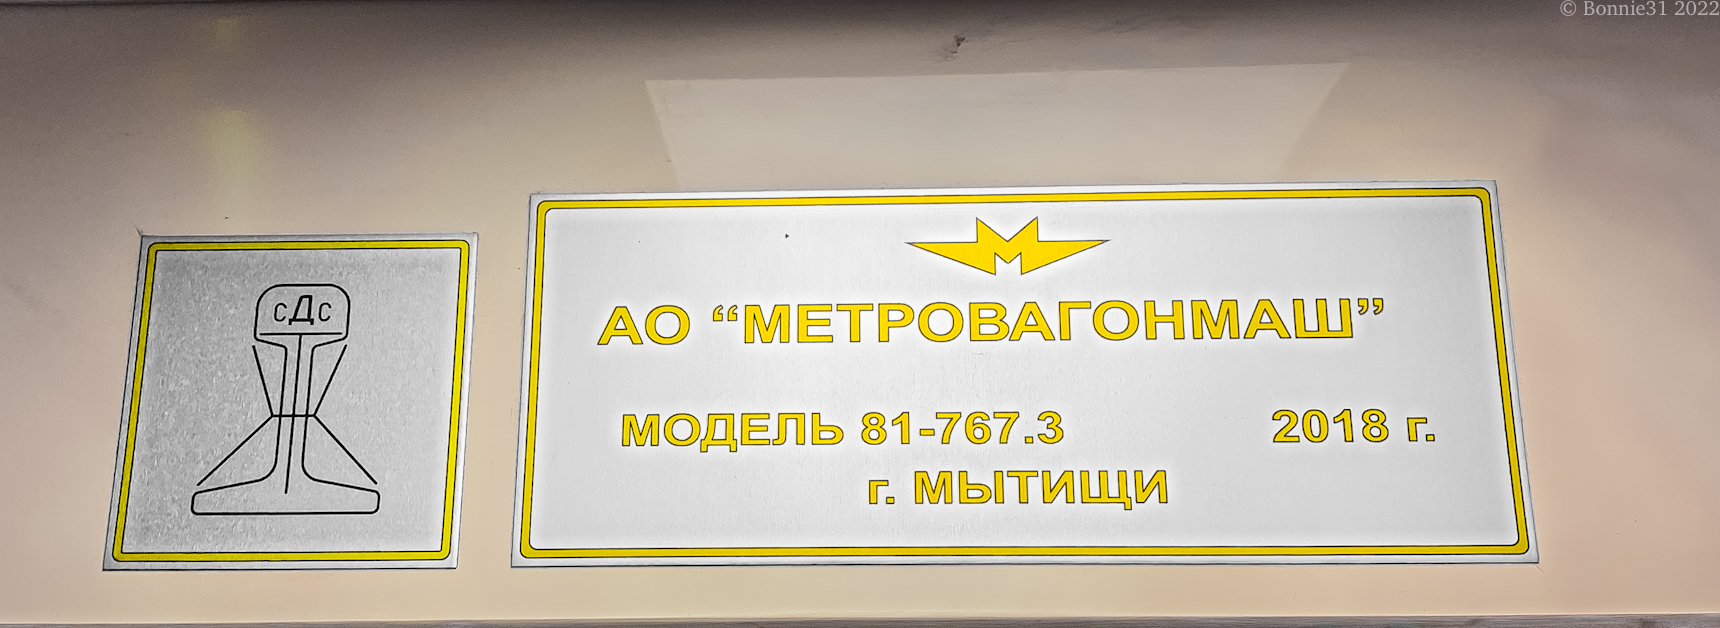 Москва, 81-767.3 «Москва» № 67259